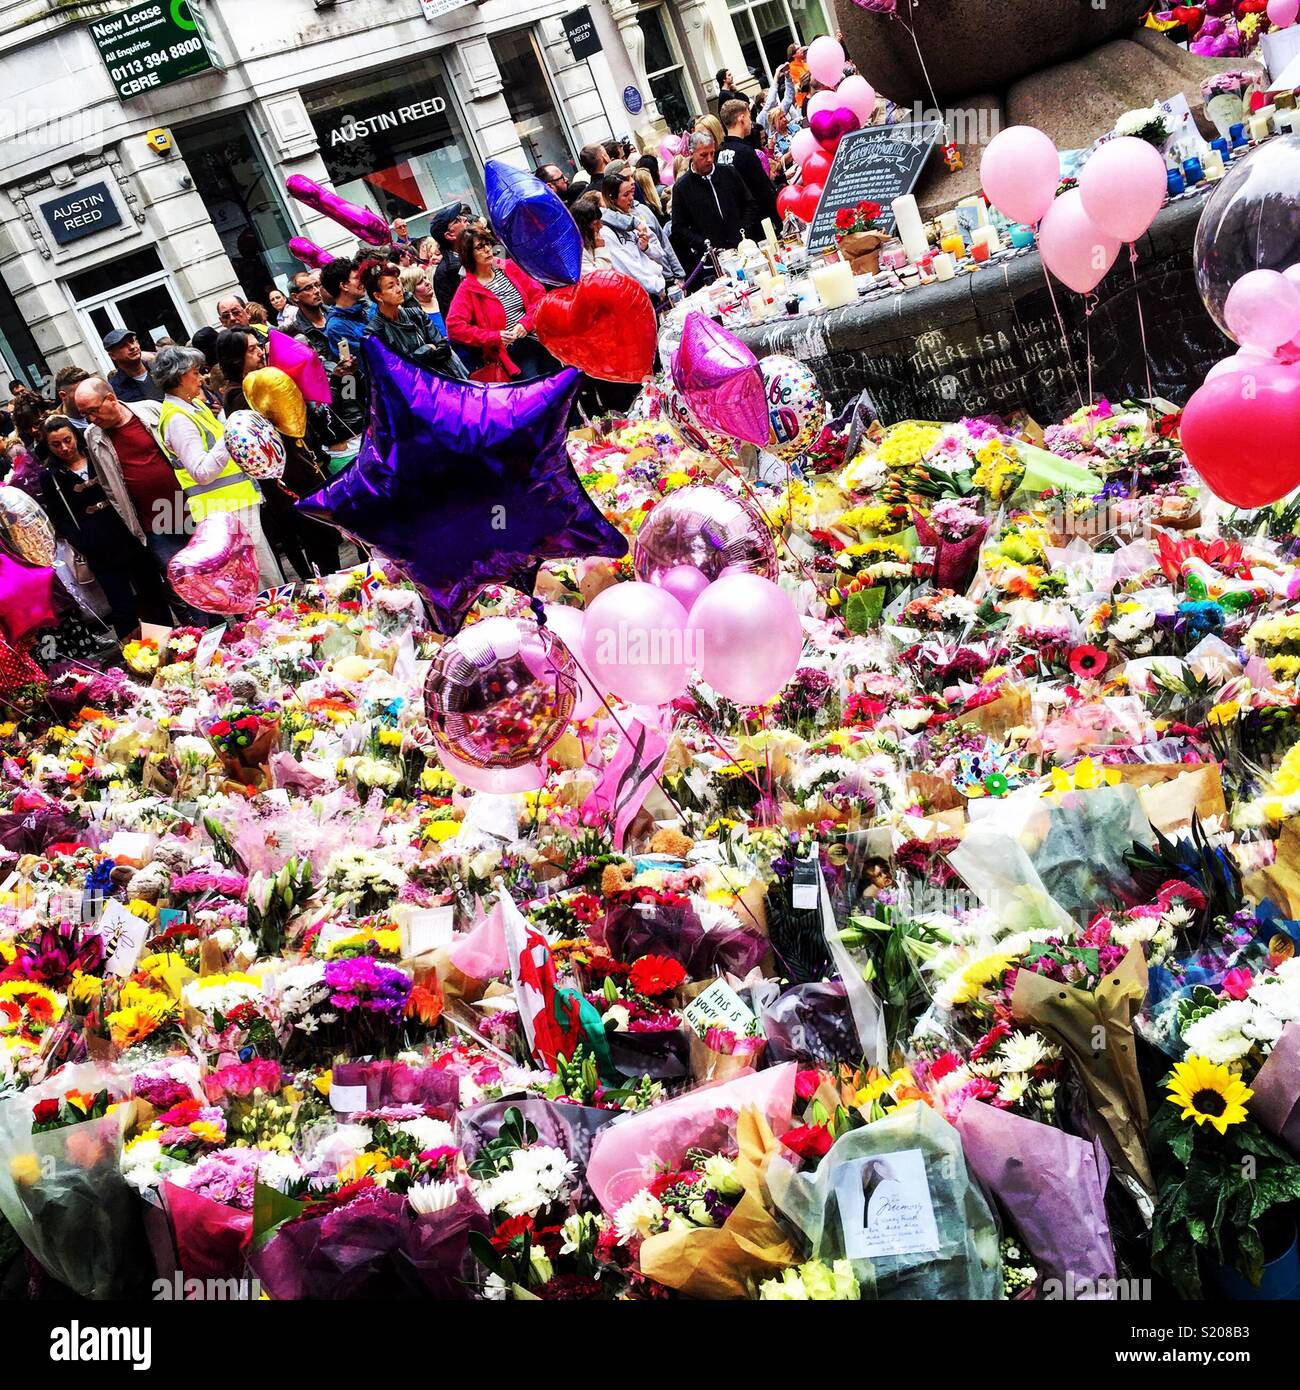 Ballon d'hommages floraux & Manchester bomb victims Banque D'Images